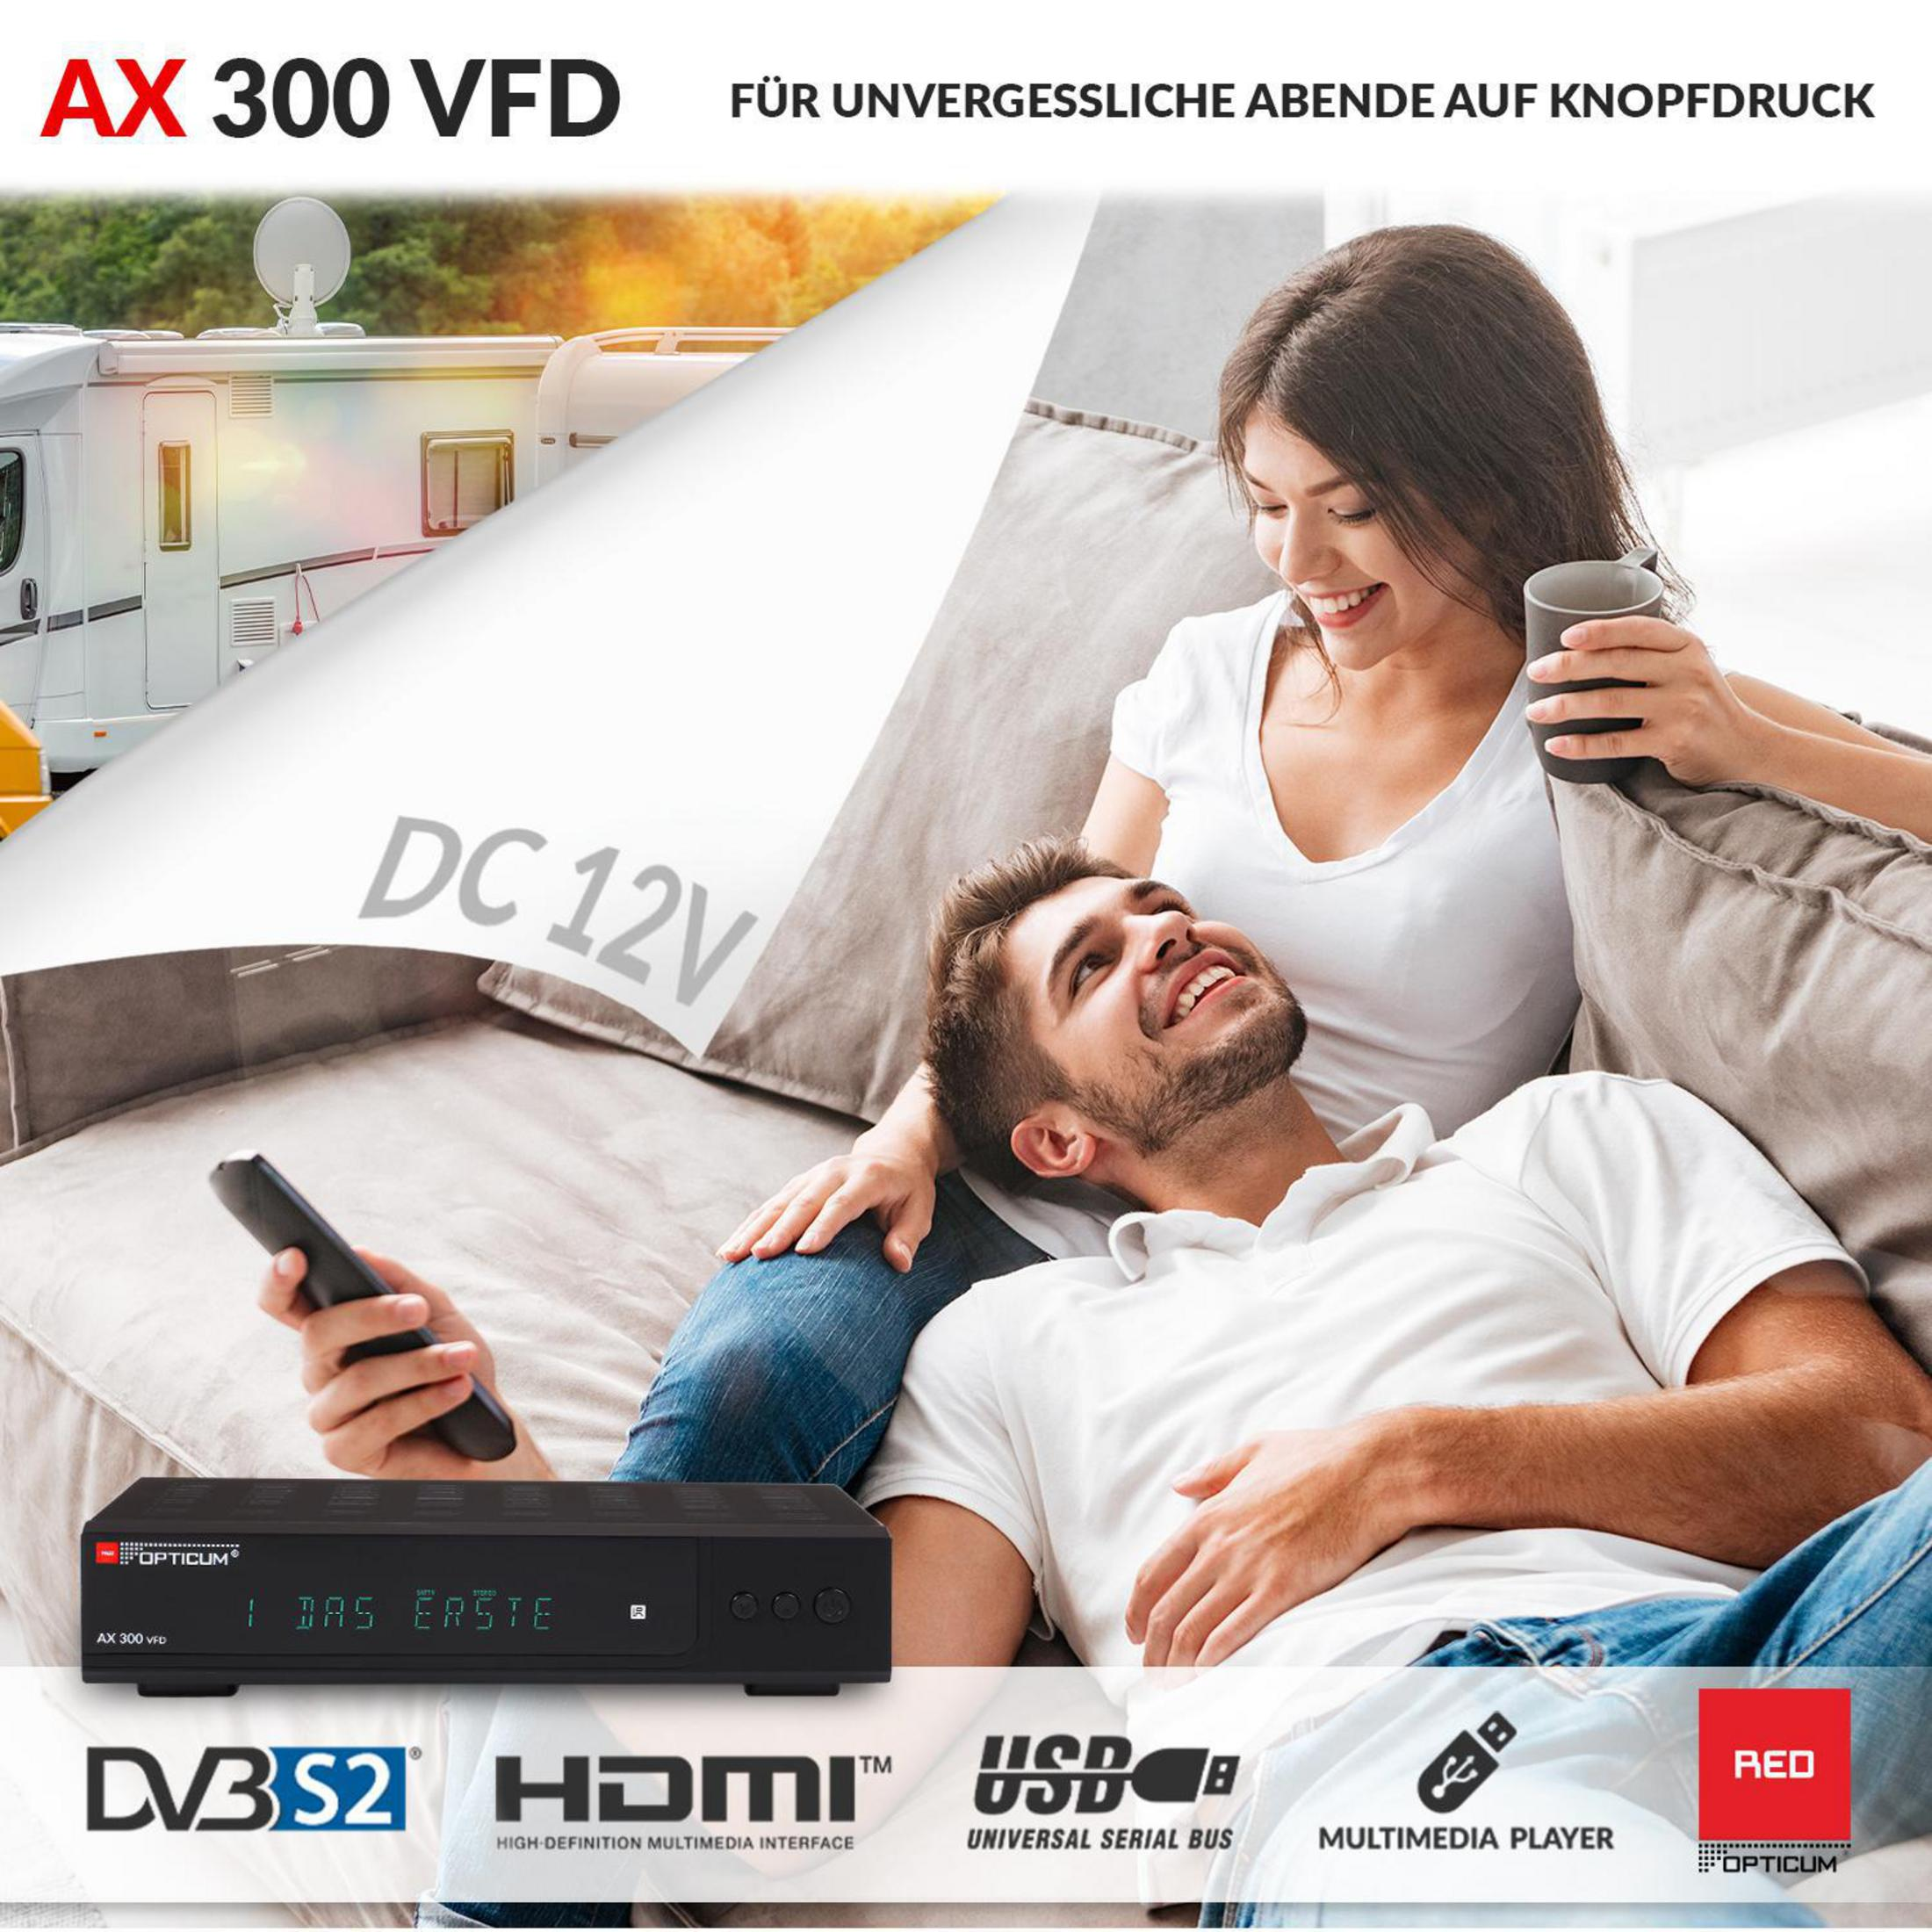 RED OPTICUM Sat alphanumerischem DVB-S2, VFD I mit (HDTV, HD-TV 12 schwarz) - AX DVB-S2 Receiver DVB-S, Display 300 Receiver V Satelliten-Receiver Digitaler